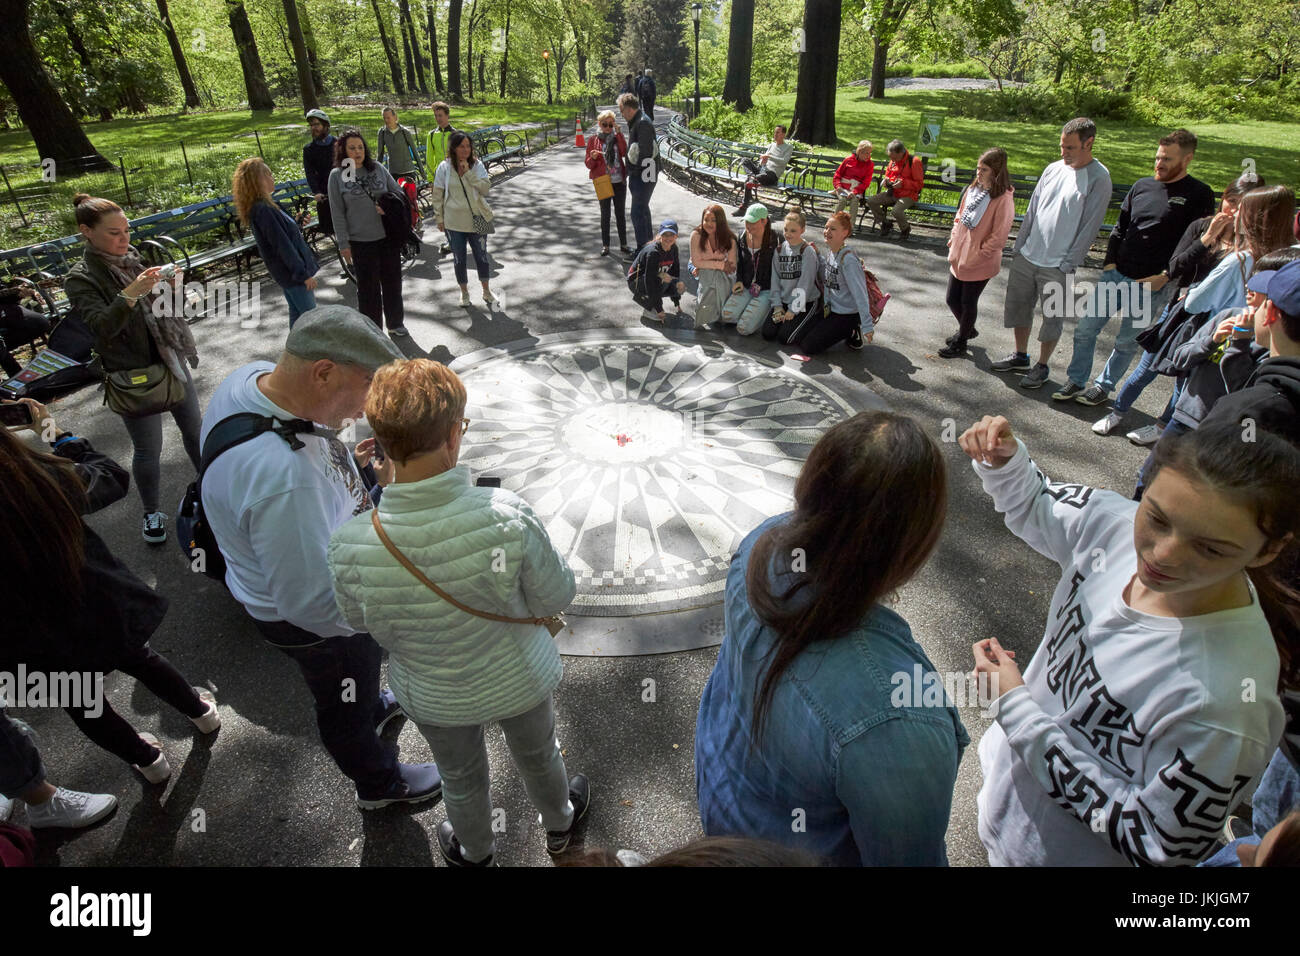 Imagine mosaico dedicado a John Lennon en Central Park, Nueva York, Estados Unidos Foto de stock